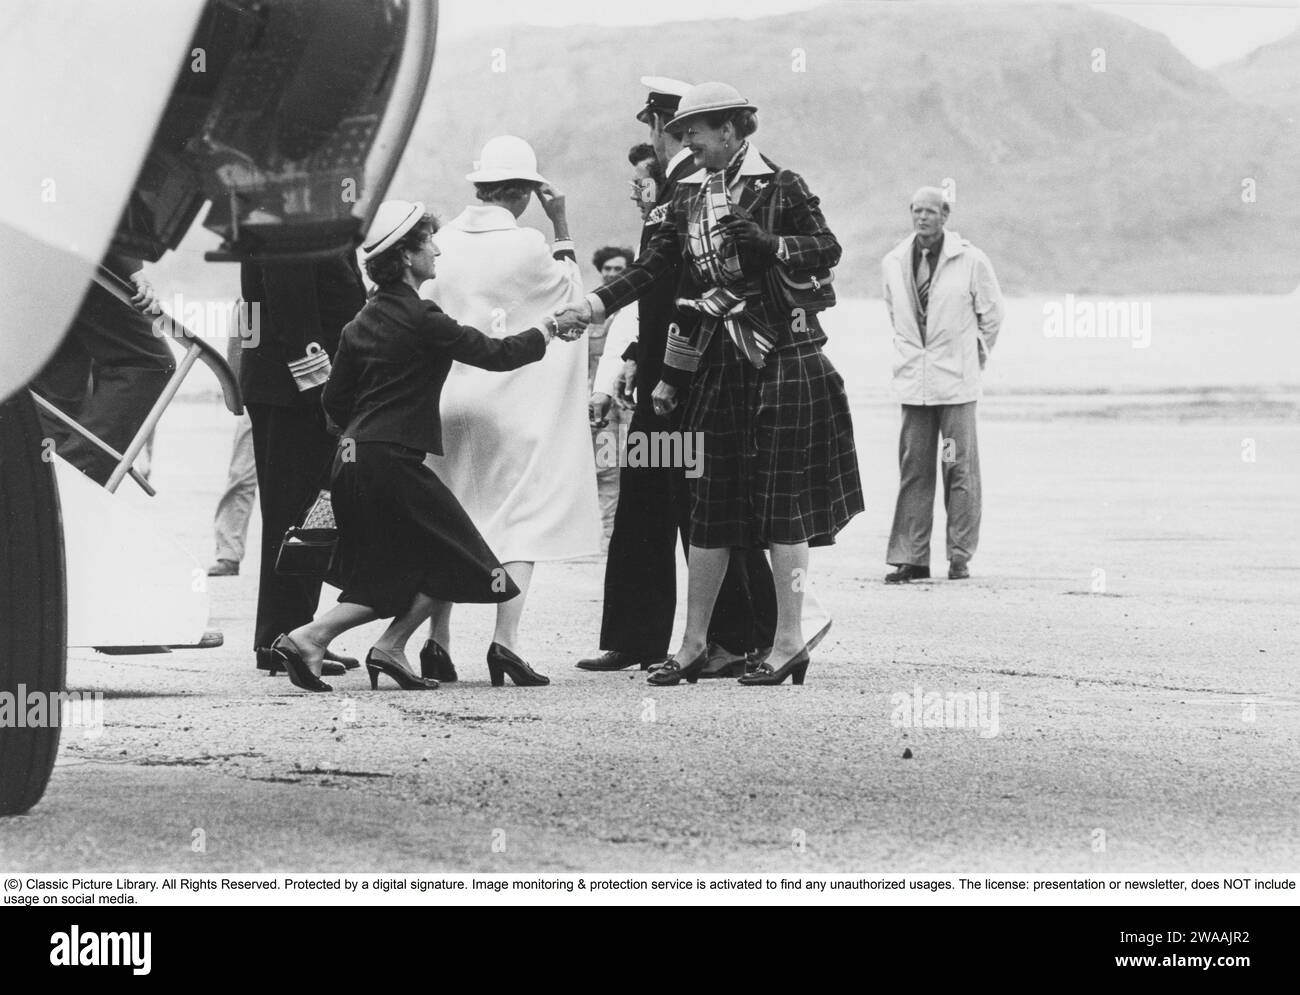 Königin Margrethe II. Von Dänemark. Hier mit ihrem Ehemann Prinz Henrik von Dänemark im Zusammenhang mit ihrem Besuch in Grönland 1982. Königin Sonja von Norwegen wird am Flughafen gesehen, wie sie Königin Margrethe Hand schüttelt. Stockfoto